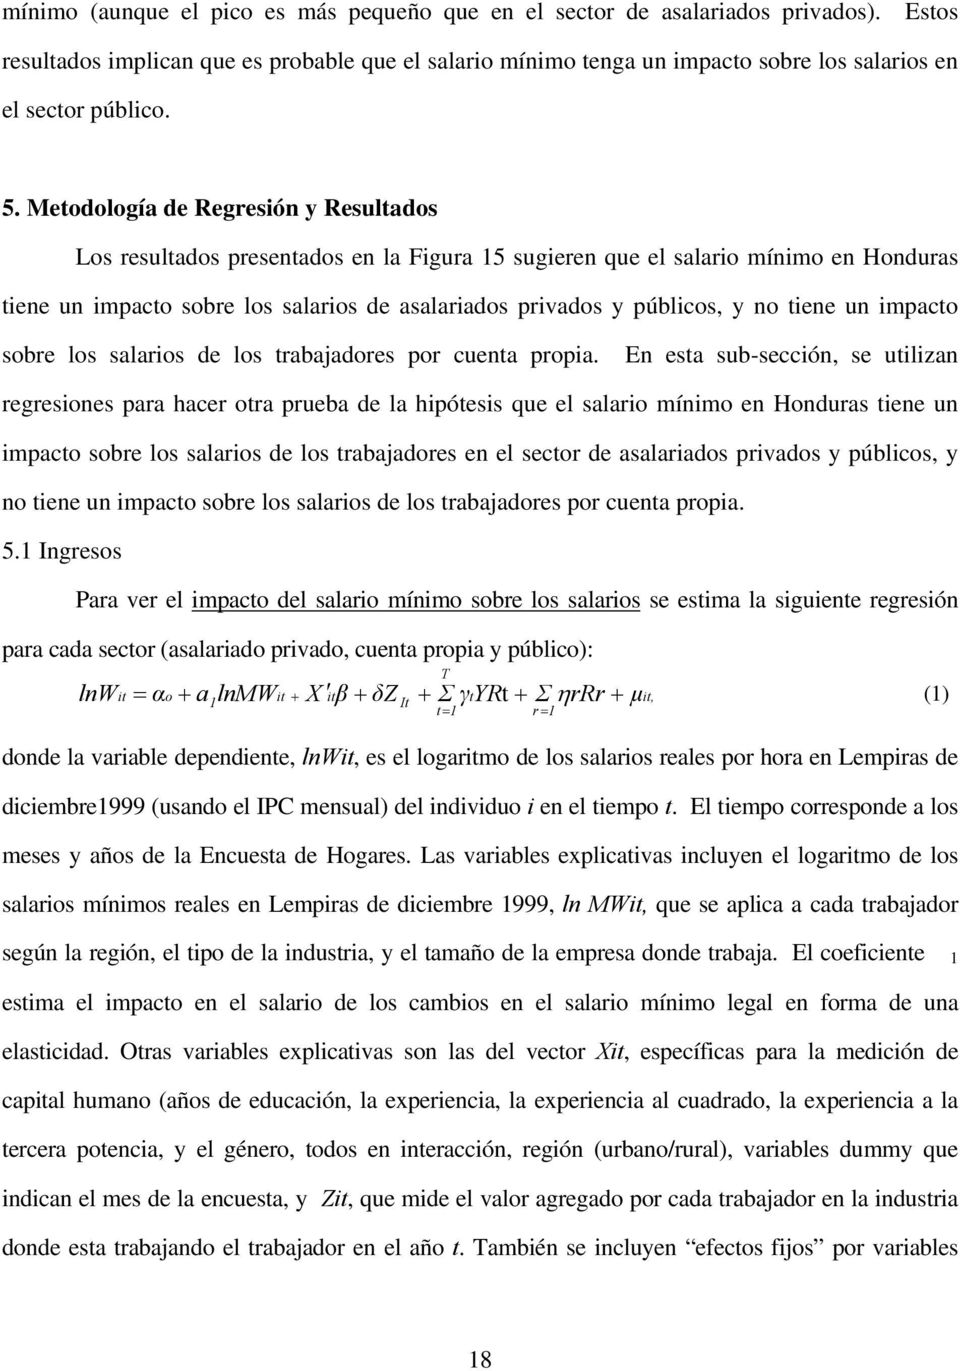 Metodología de Regresión y Resultados Los resultados presentados en la Figura 15 sugieren que el salario mínimo en Honduras tiene un impacto sobre los salarios de asalariados privados y públicos, y